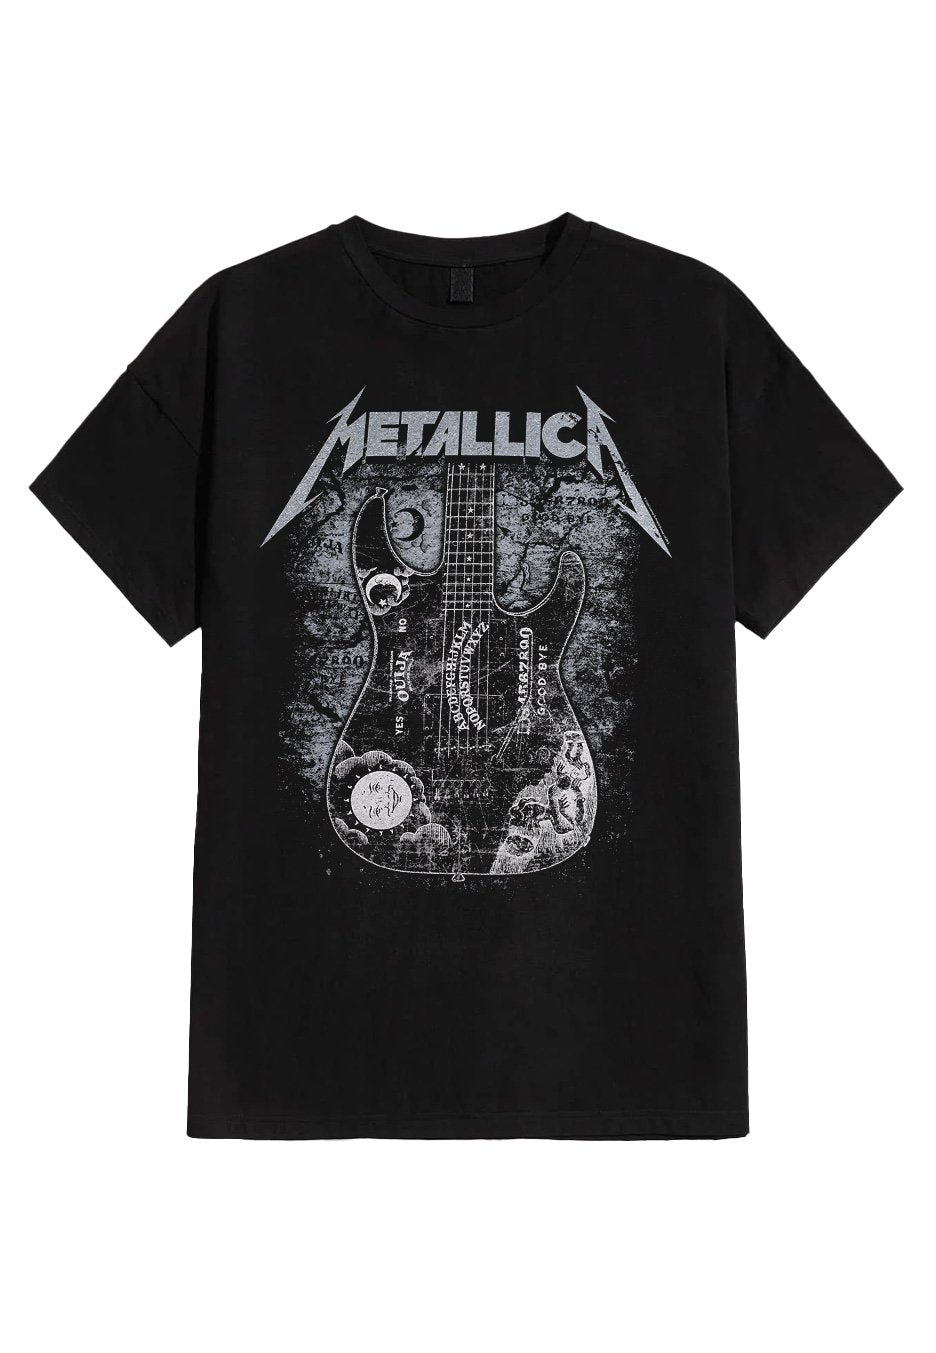 Metallica - Hammett Ouija Guitar - T-Shirt